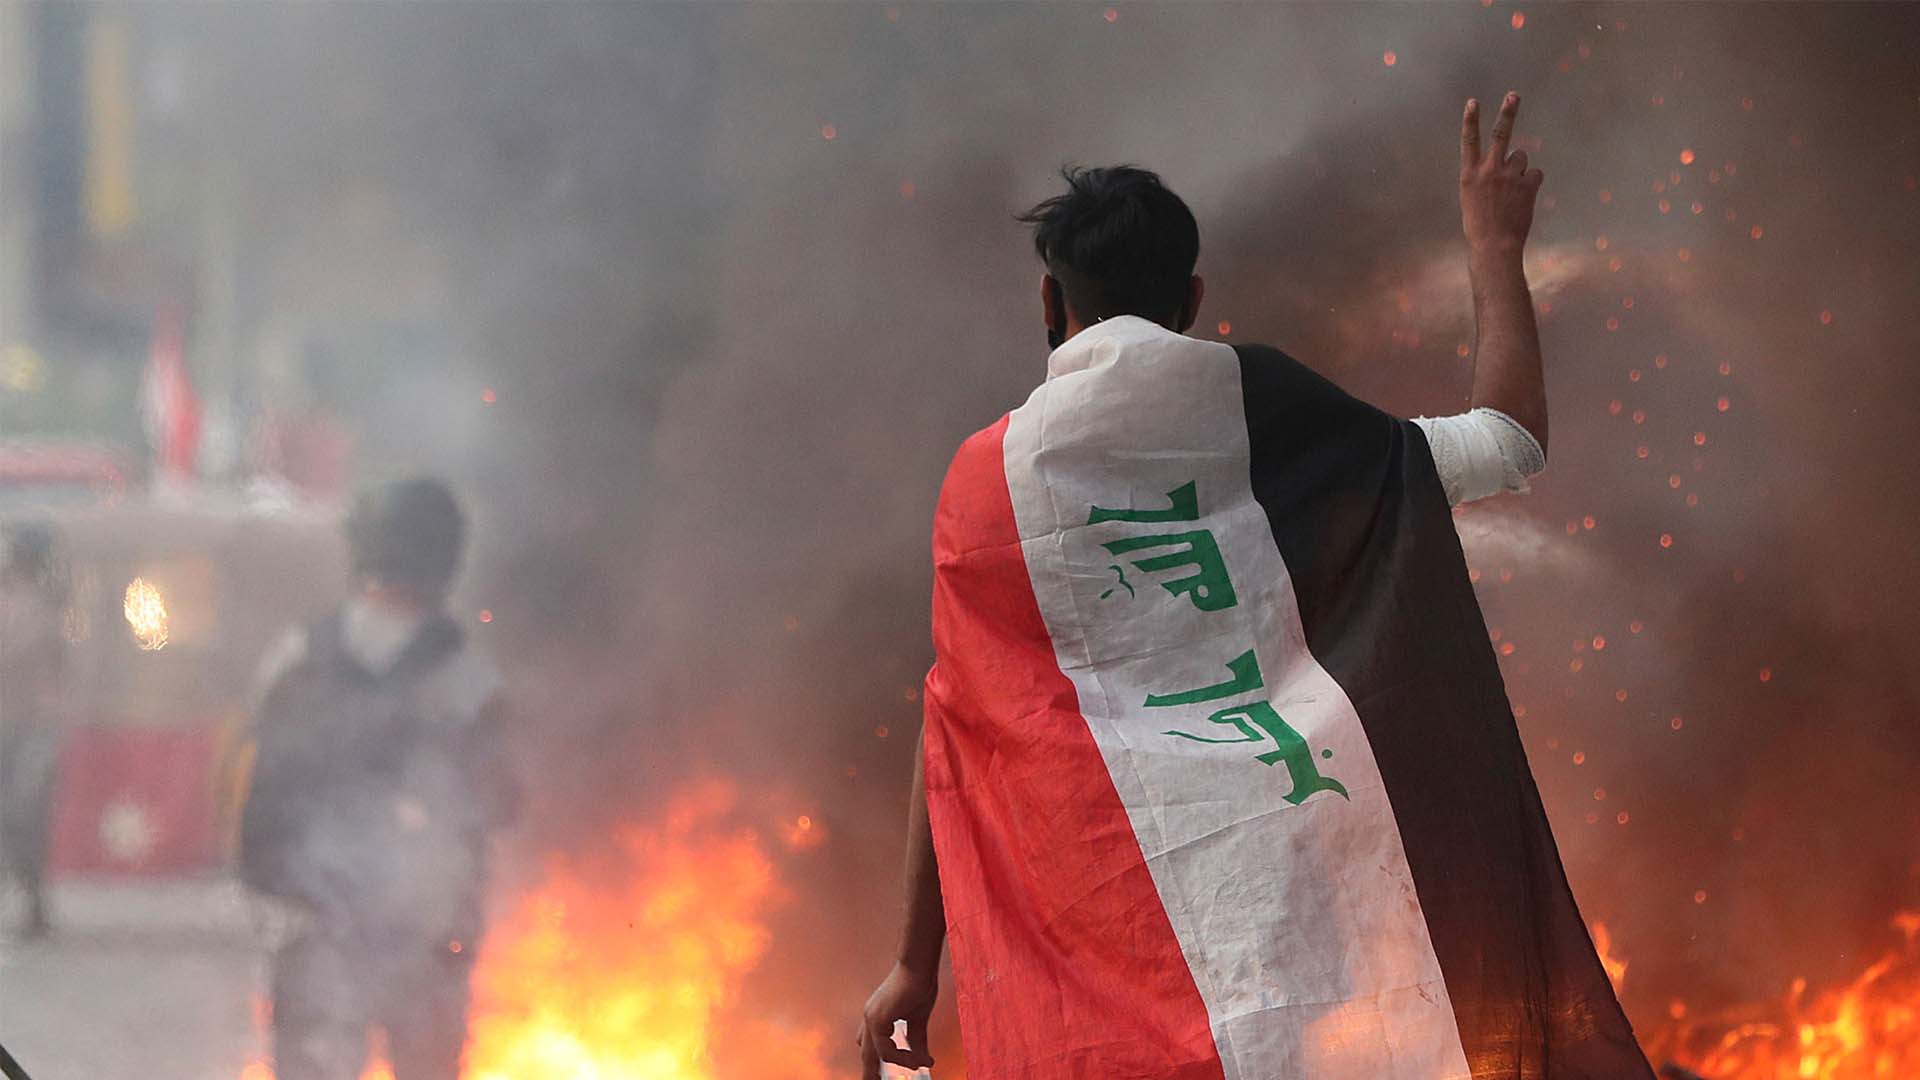 Cobran fuerza las protestas contra el Gobierno de Irak: más de 300 muertos y miles de heridos